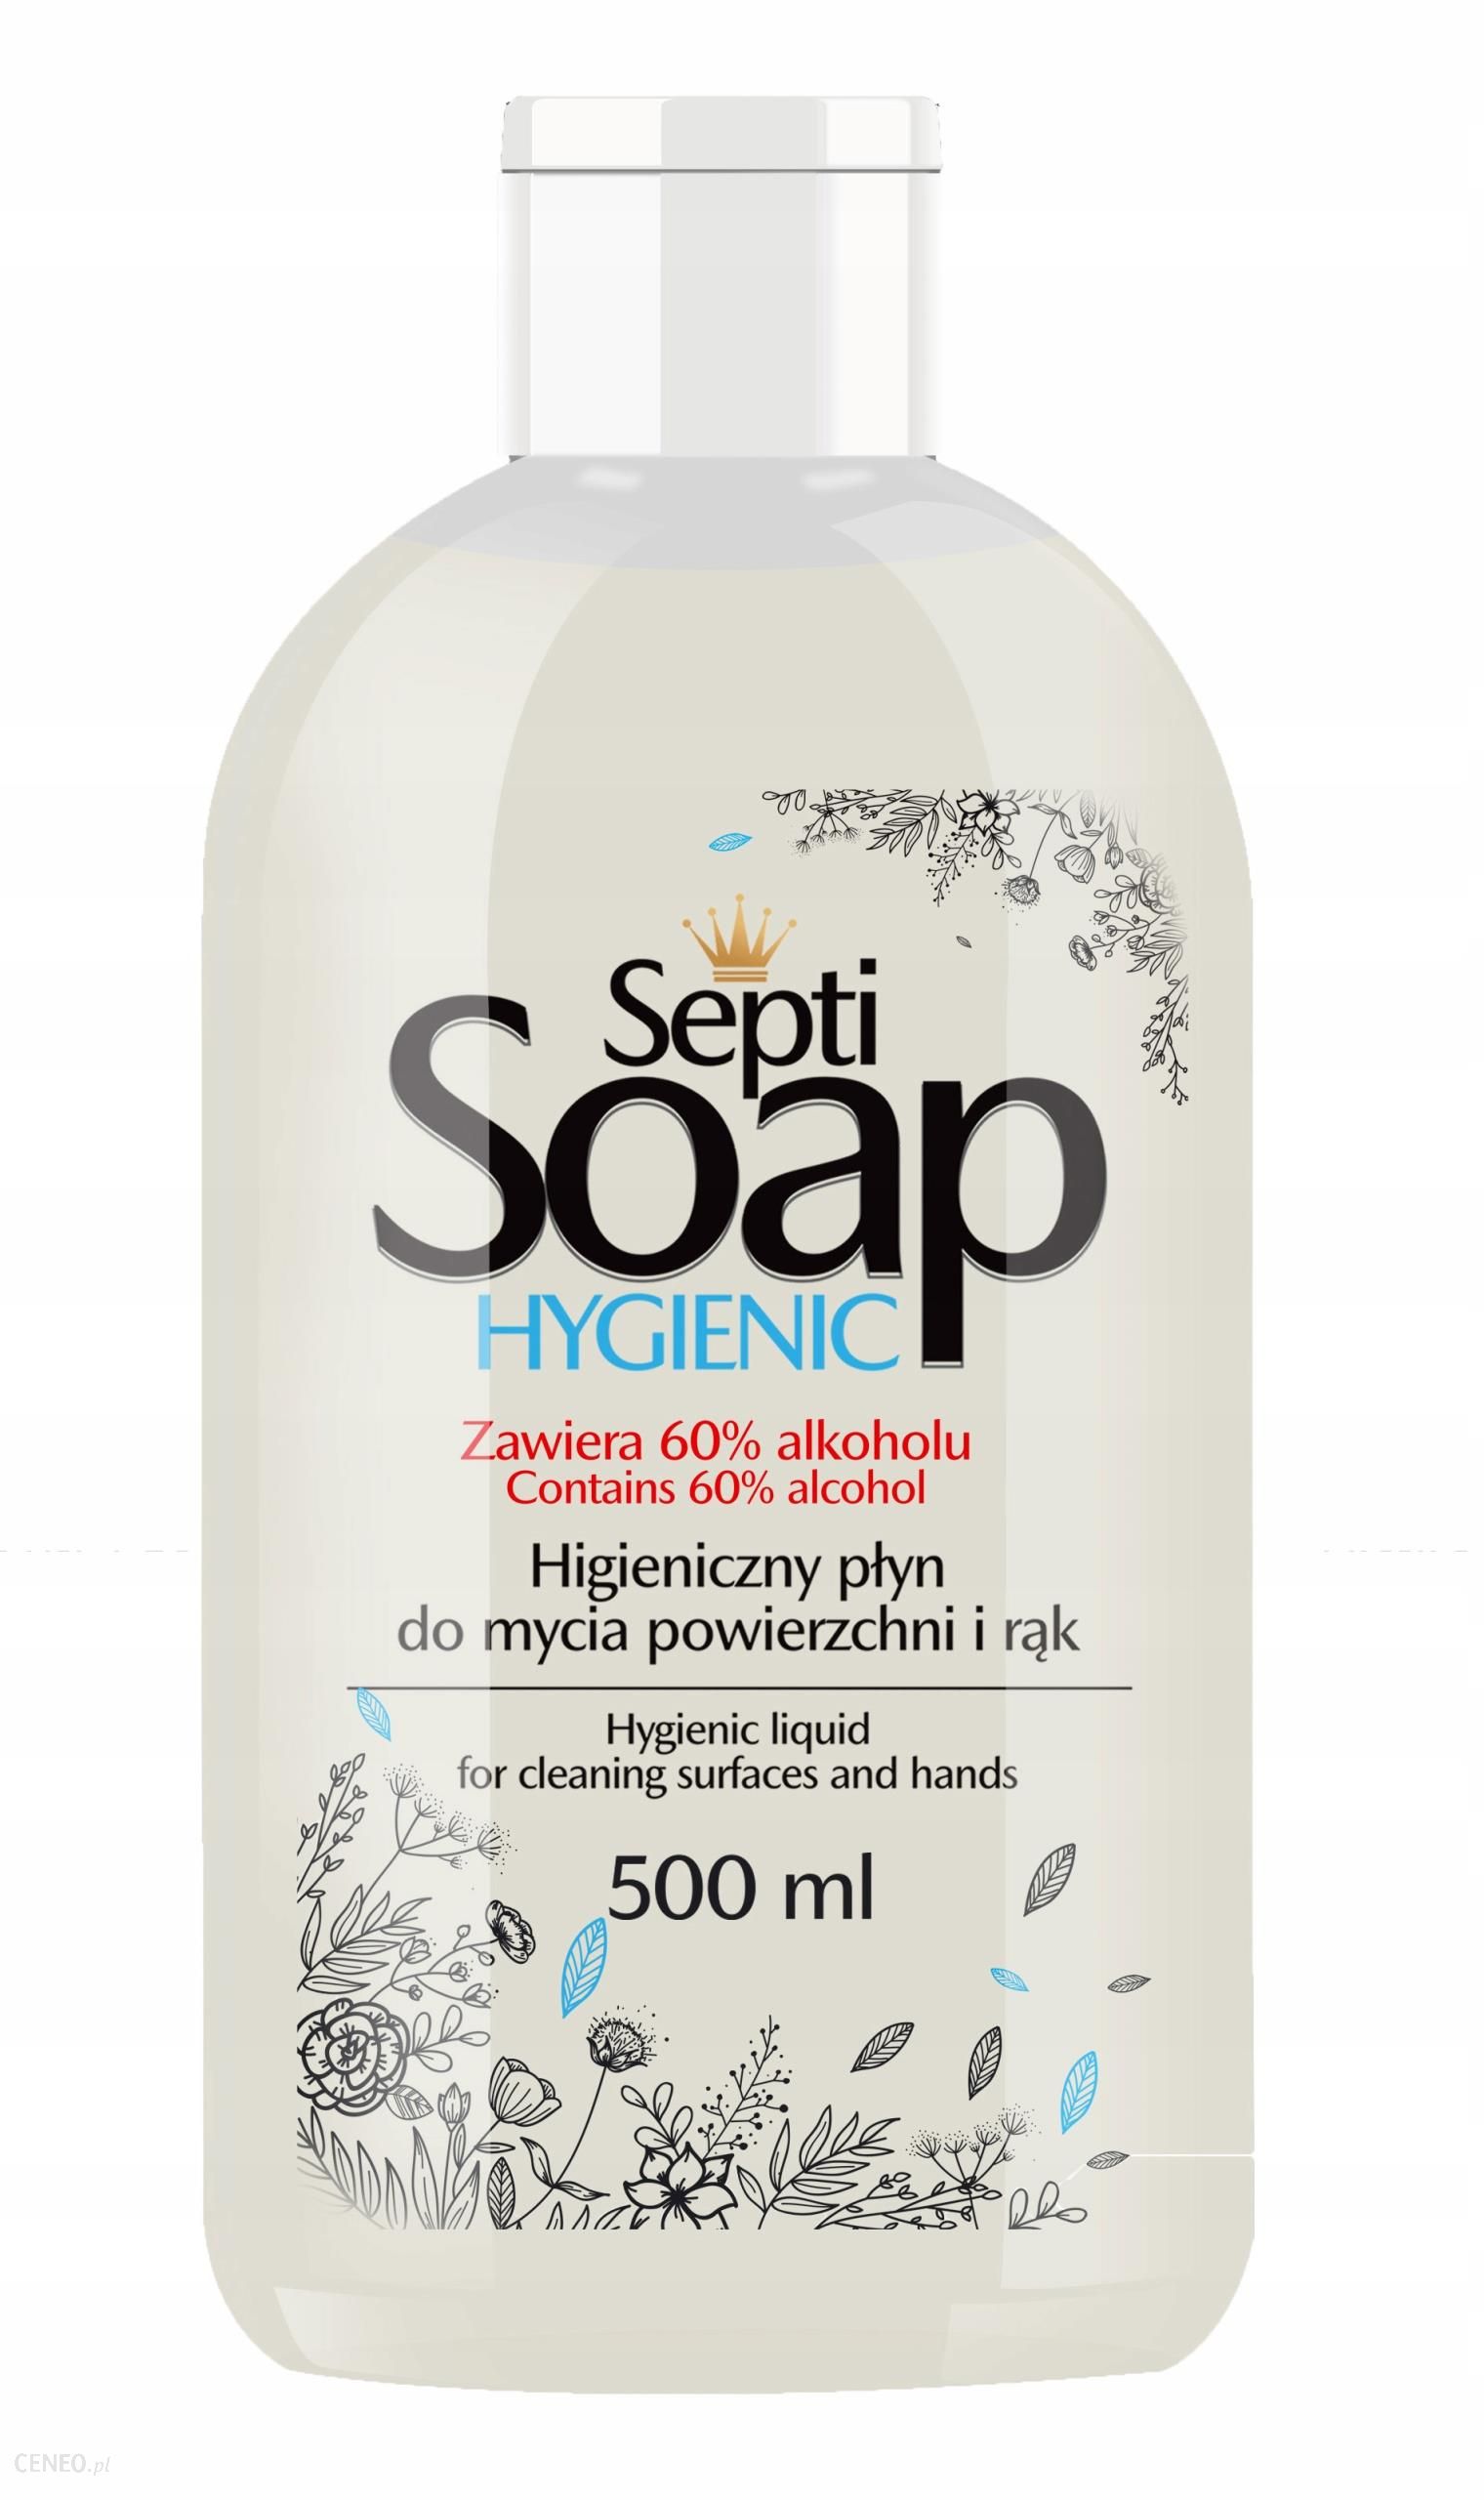 Clovin Septi Soap Hygienic Antybakteryjny Higieniczny Płyn 500Ml